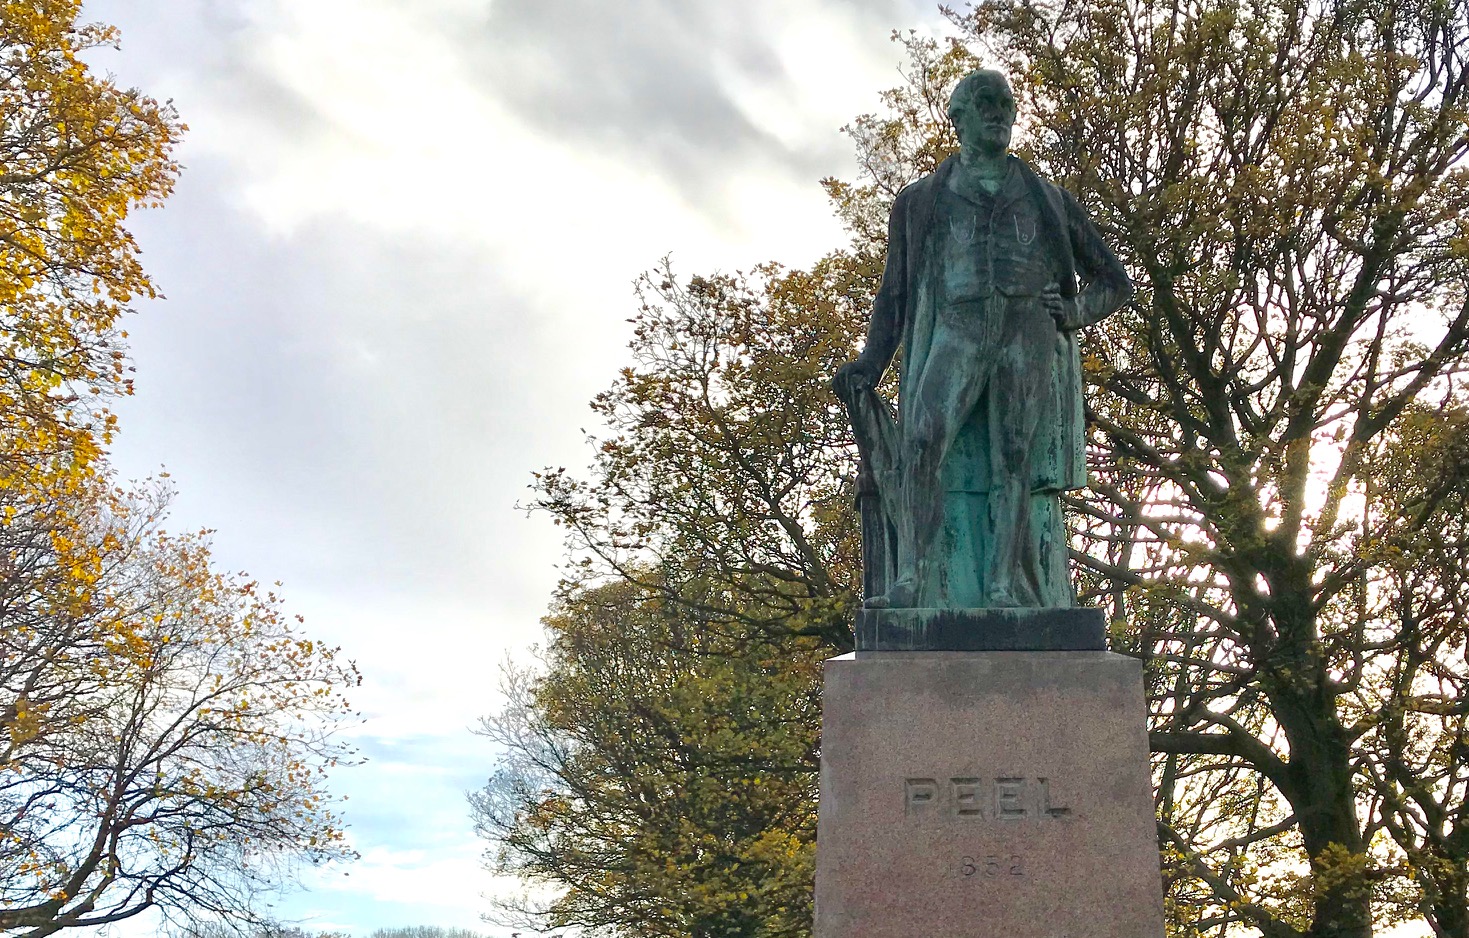 Sir Robert Peel Statue, Woodhouse Moor © HP